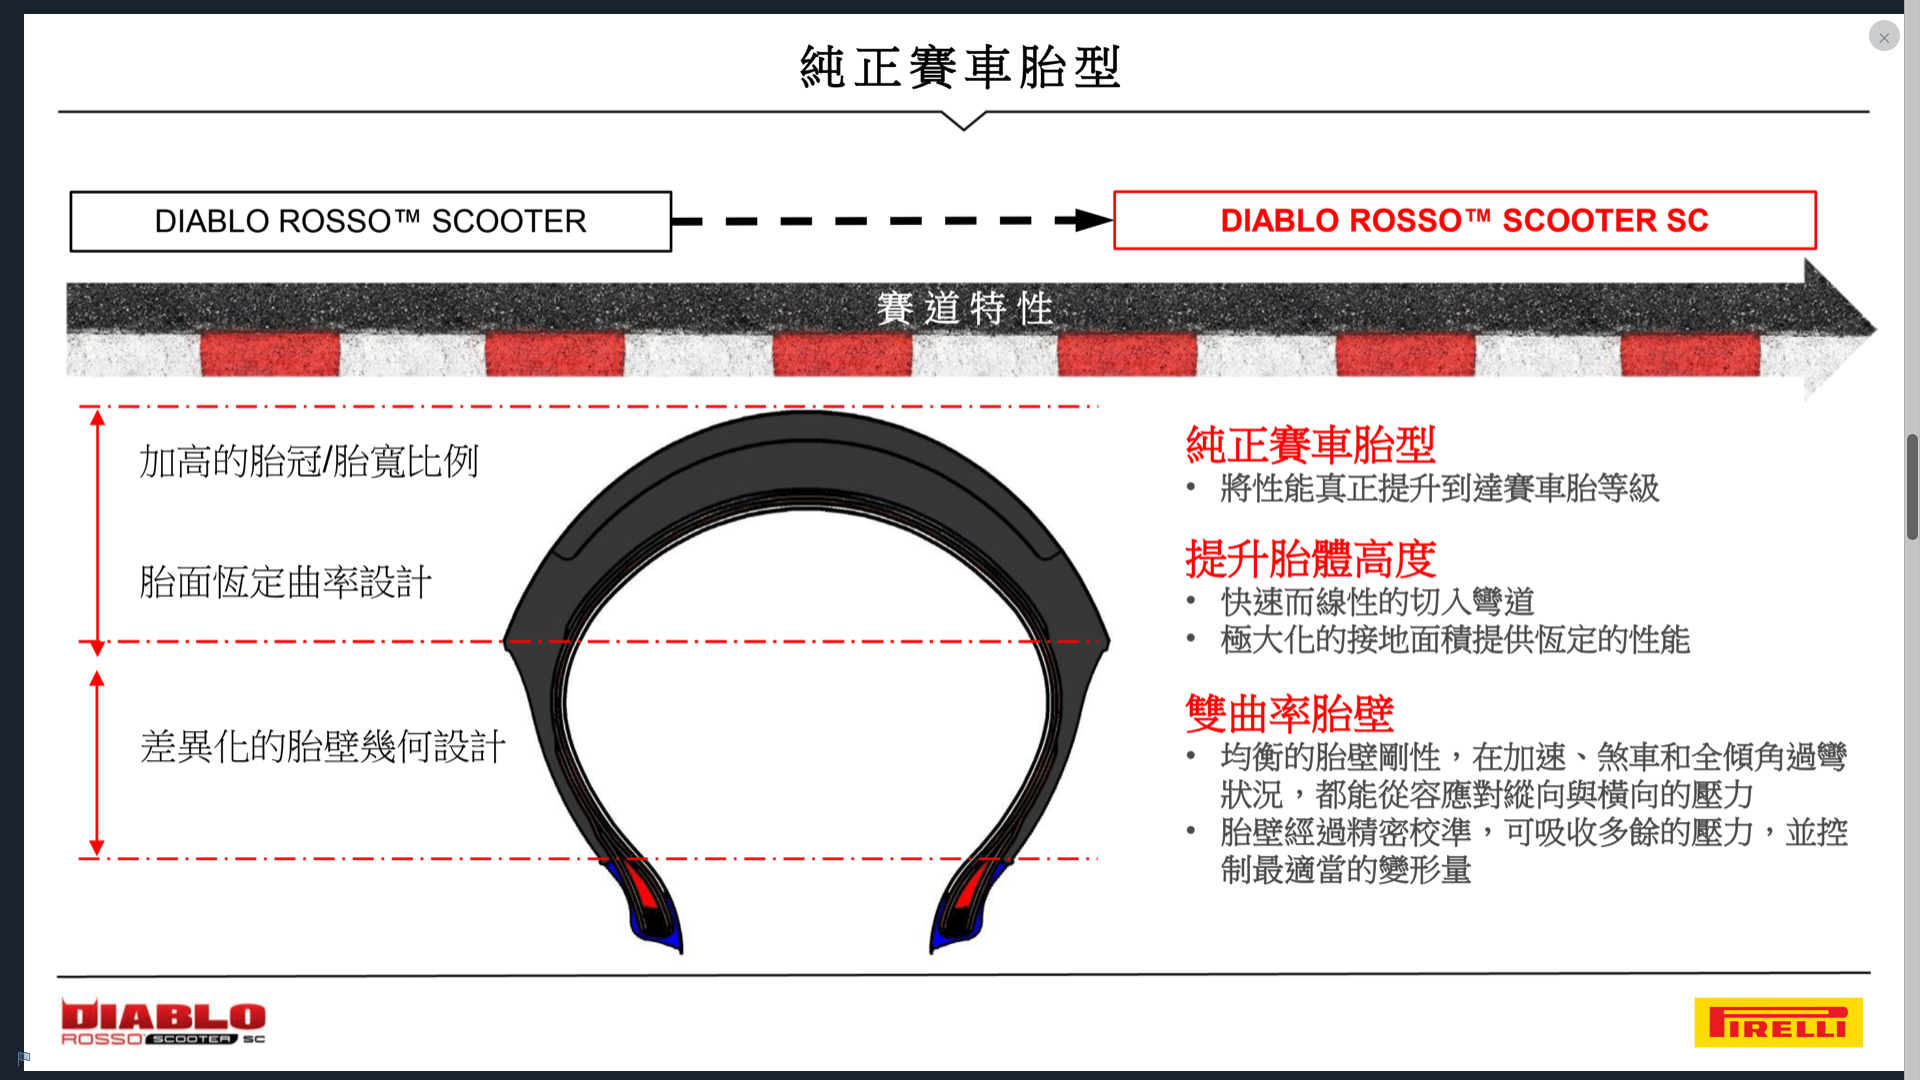 DIABLO ROSSO™ SCOOTER SC使用恆定曲率胎面搭配上雙曲率胎壁的新設計